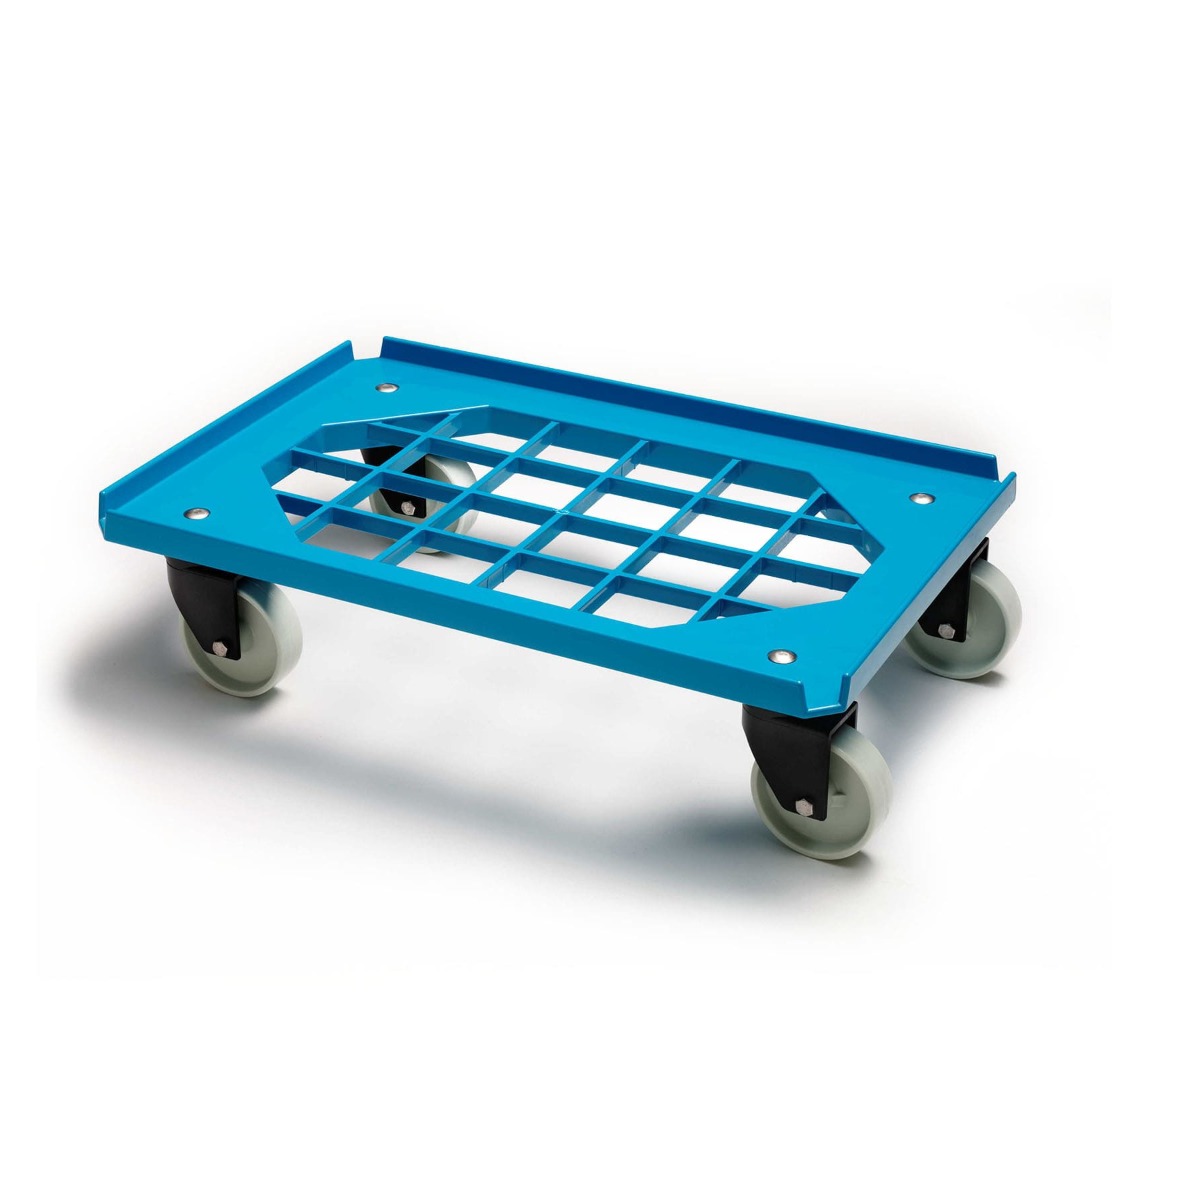 Billede af Mini Moove tralle, m. gitterramme, blå, m. 4 hjul, 60x40 cm